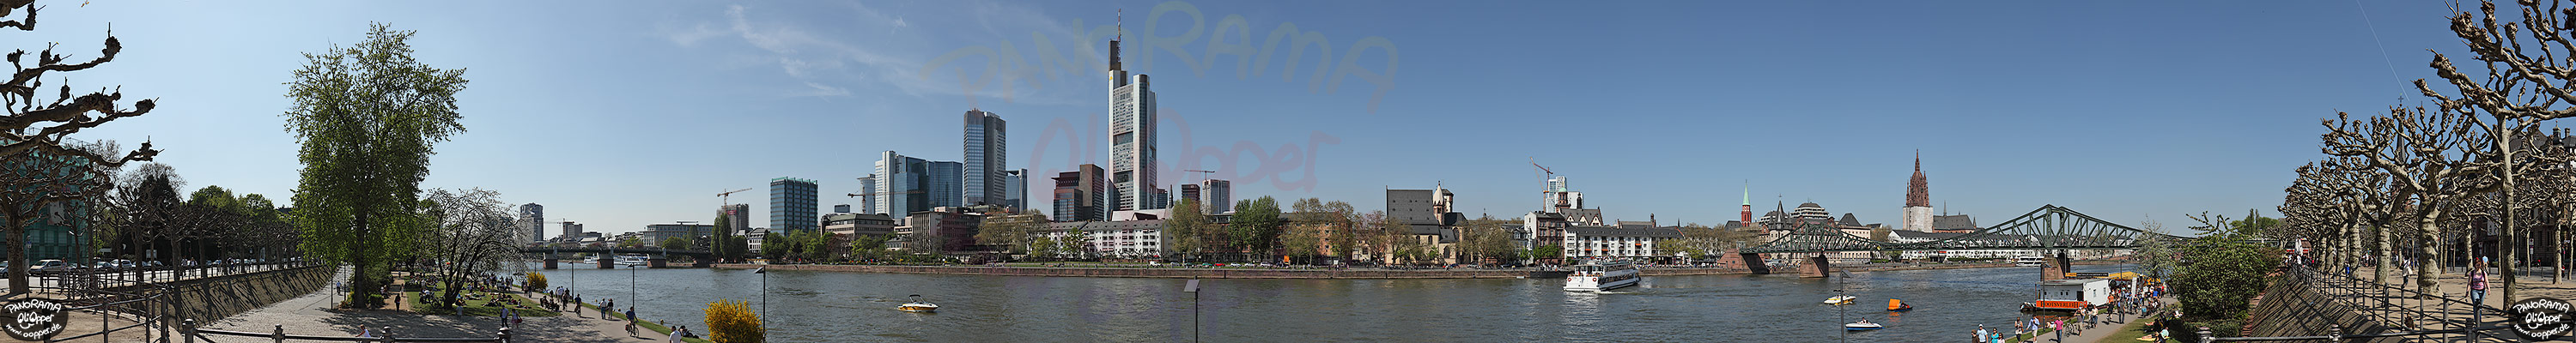 Frankfurt am Main - Rund um den Eisernen Steg im Fr�hling - p416 - (c) by Oliver Opper